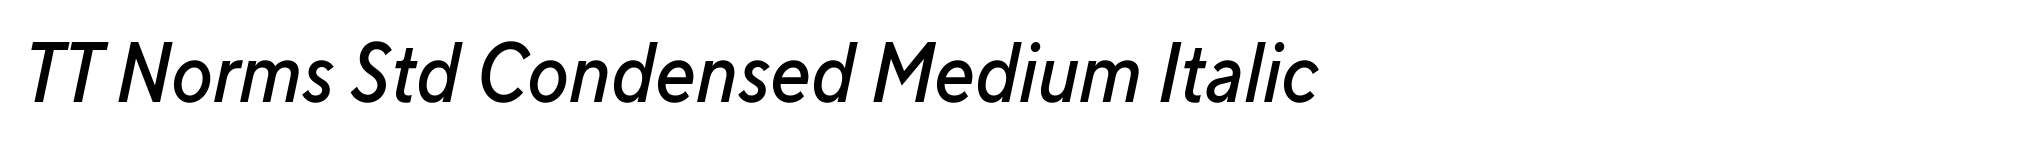 TT Norms Std Condensed Medium Italic image